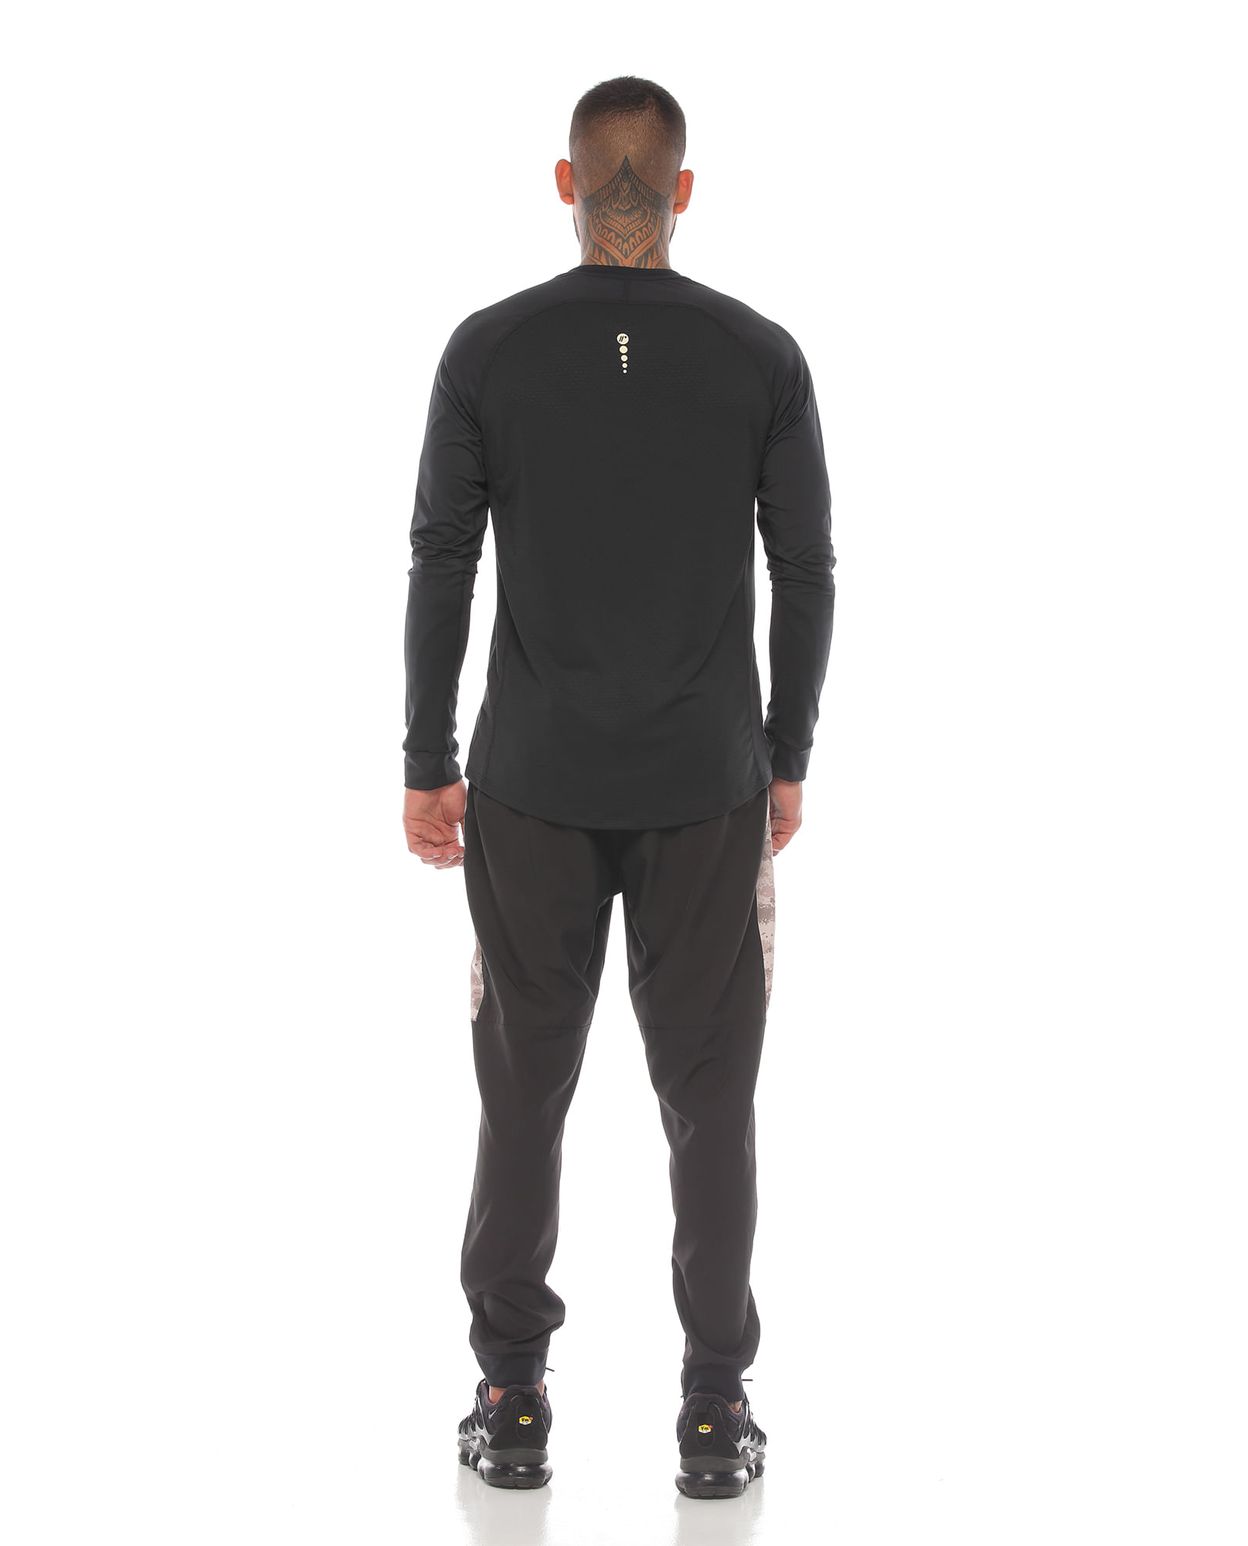 modelo con pantalon y camibuso deportivo color negro arena para hombre cuerpo completo parte trasera